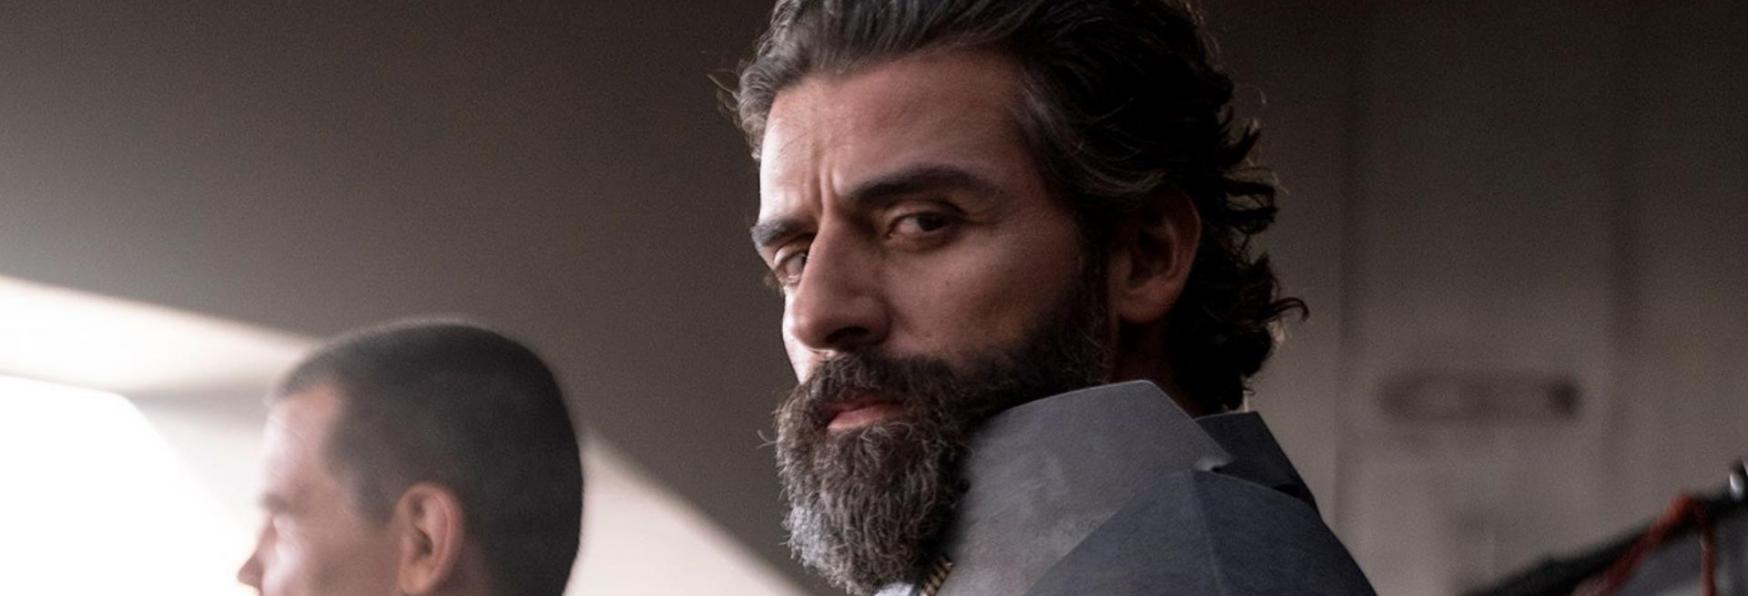 Moon Knight: Oscar Isaac protagonista di un nuovo Video dal Set della Serie TV Marvel